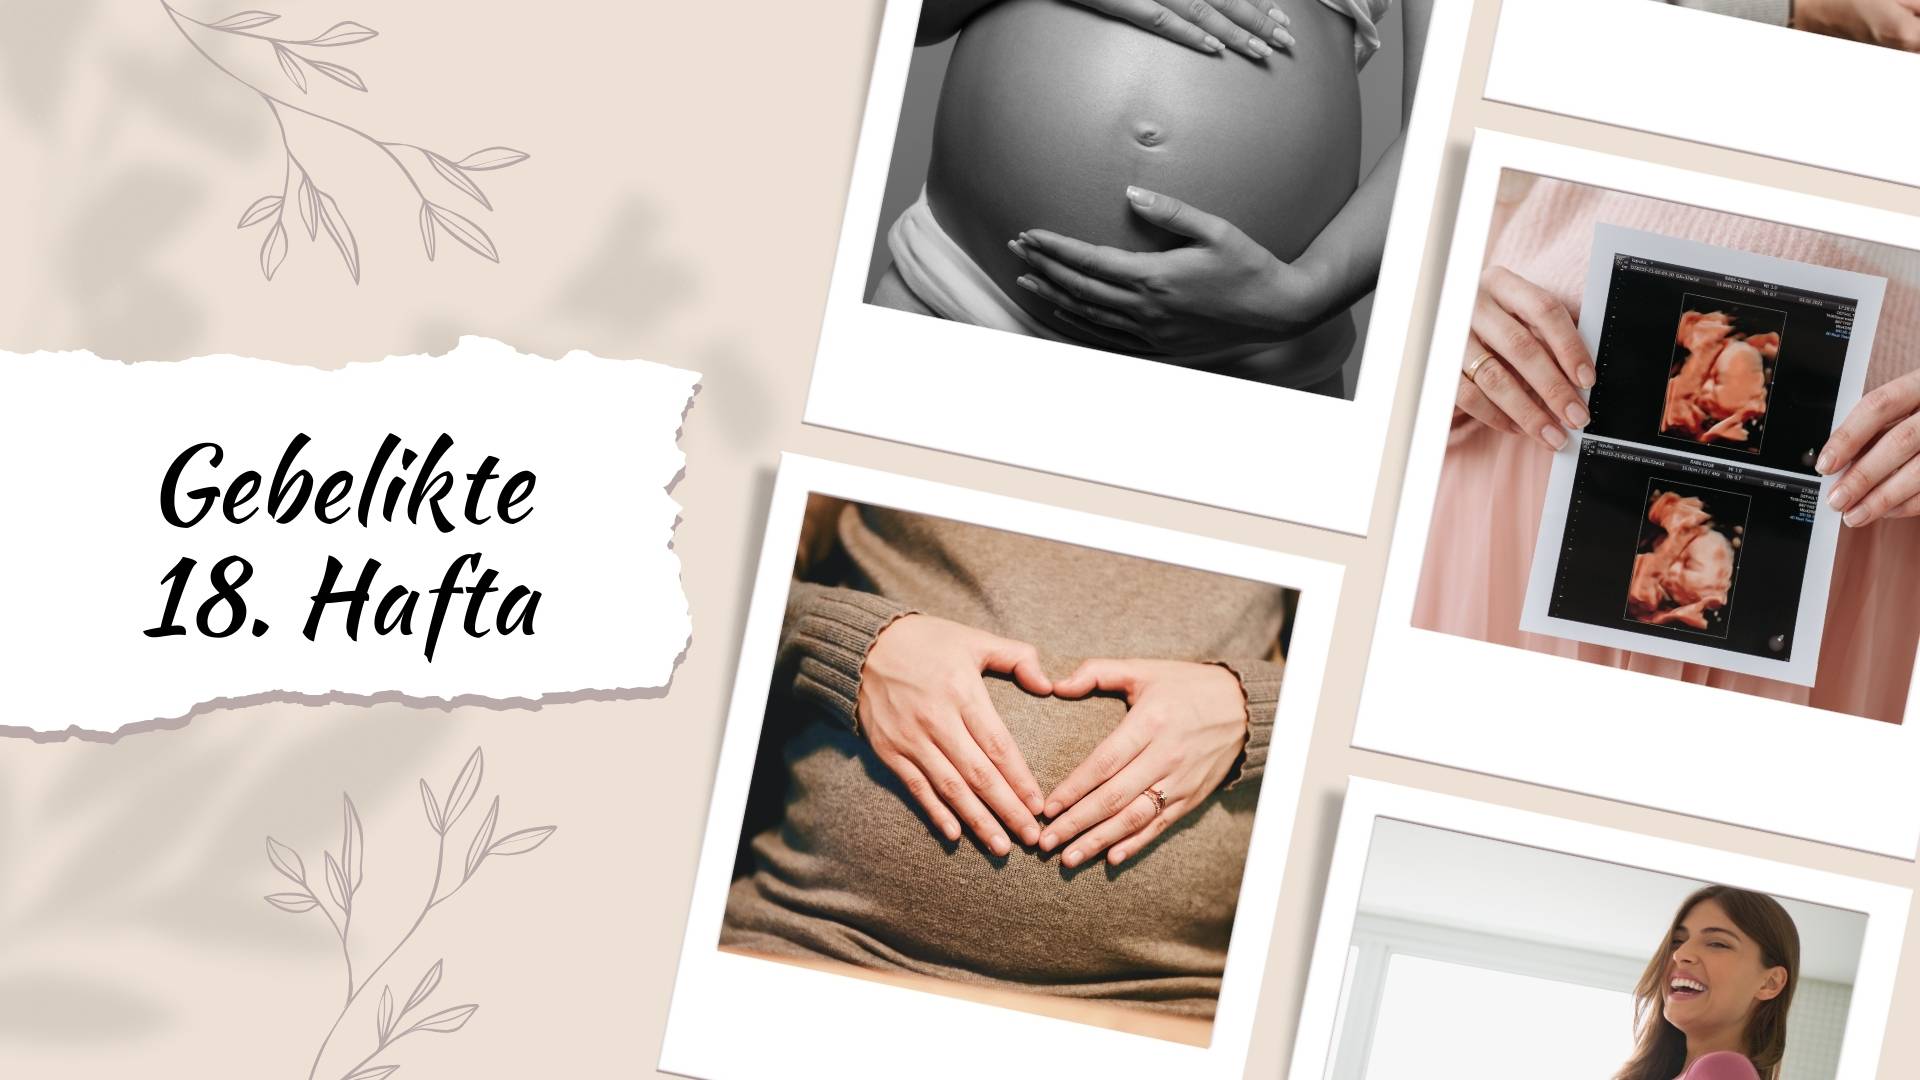 Hamileliğin 18. haftasında bebeğin gelişimi, beslenme, egzersiz önerileri ve daha fazlası. 18. Hafta Gebelik konusunda bilmeniz gereken her şey burada!